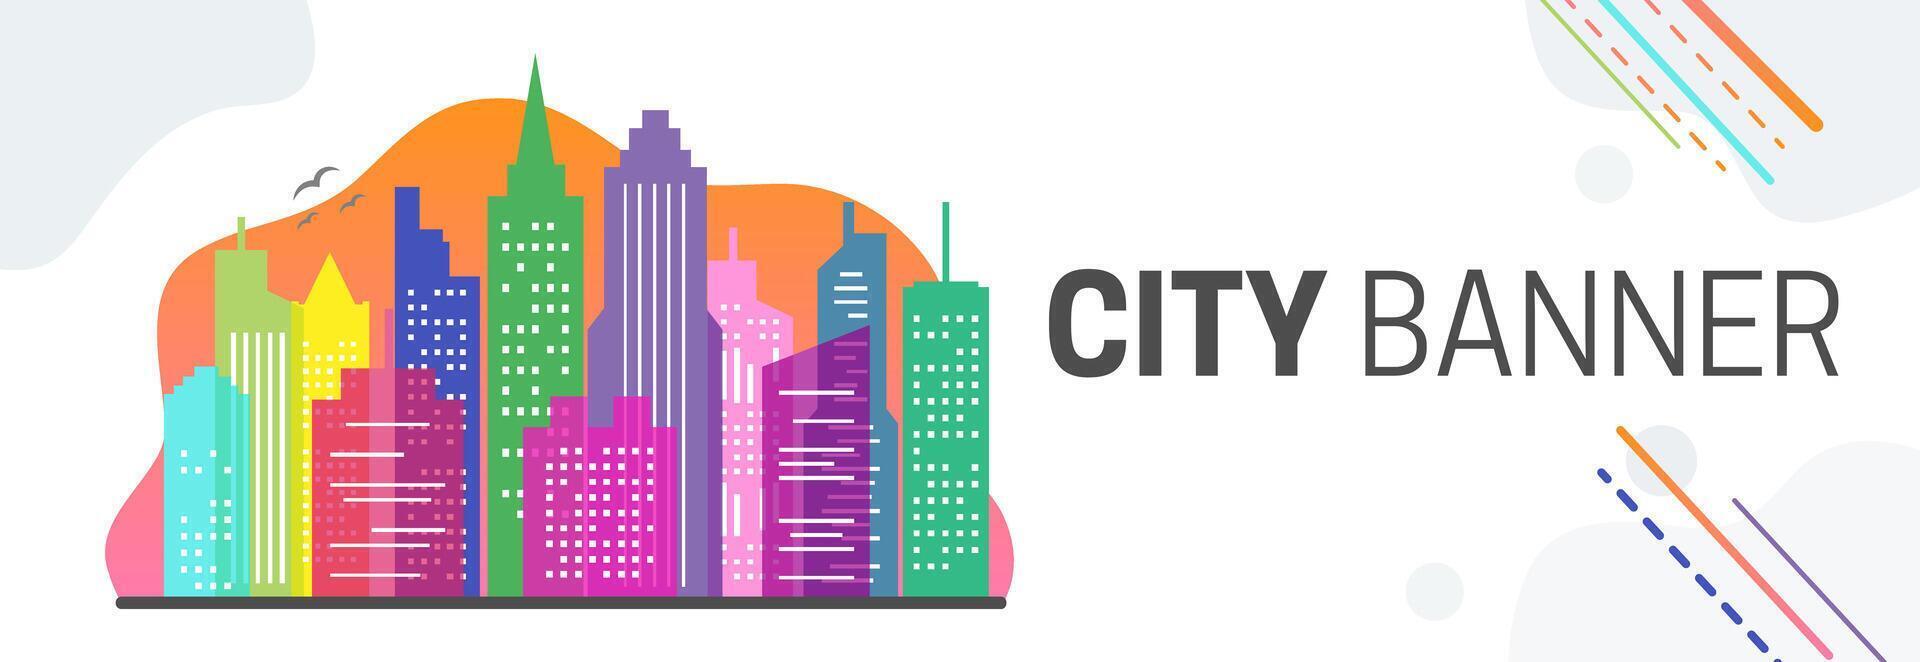 kleurrijk stad website banier illustratie met stadsgezicht vector